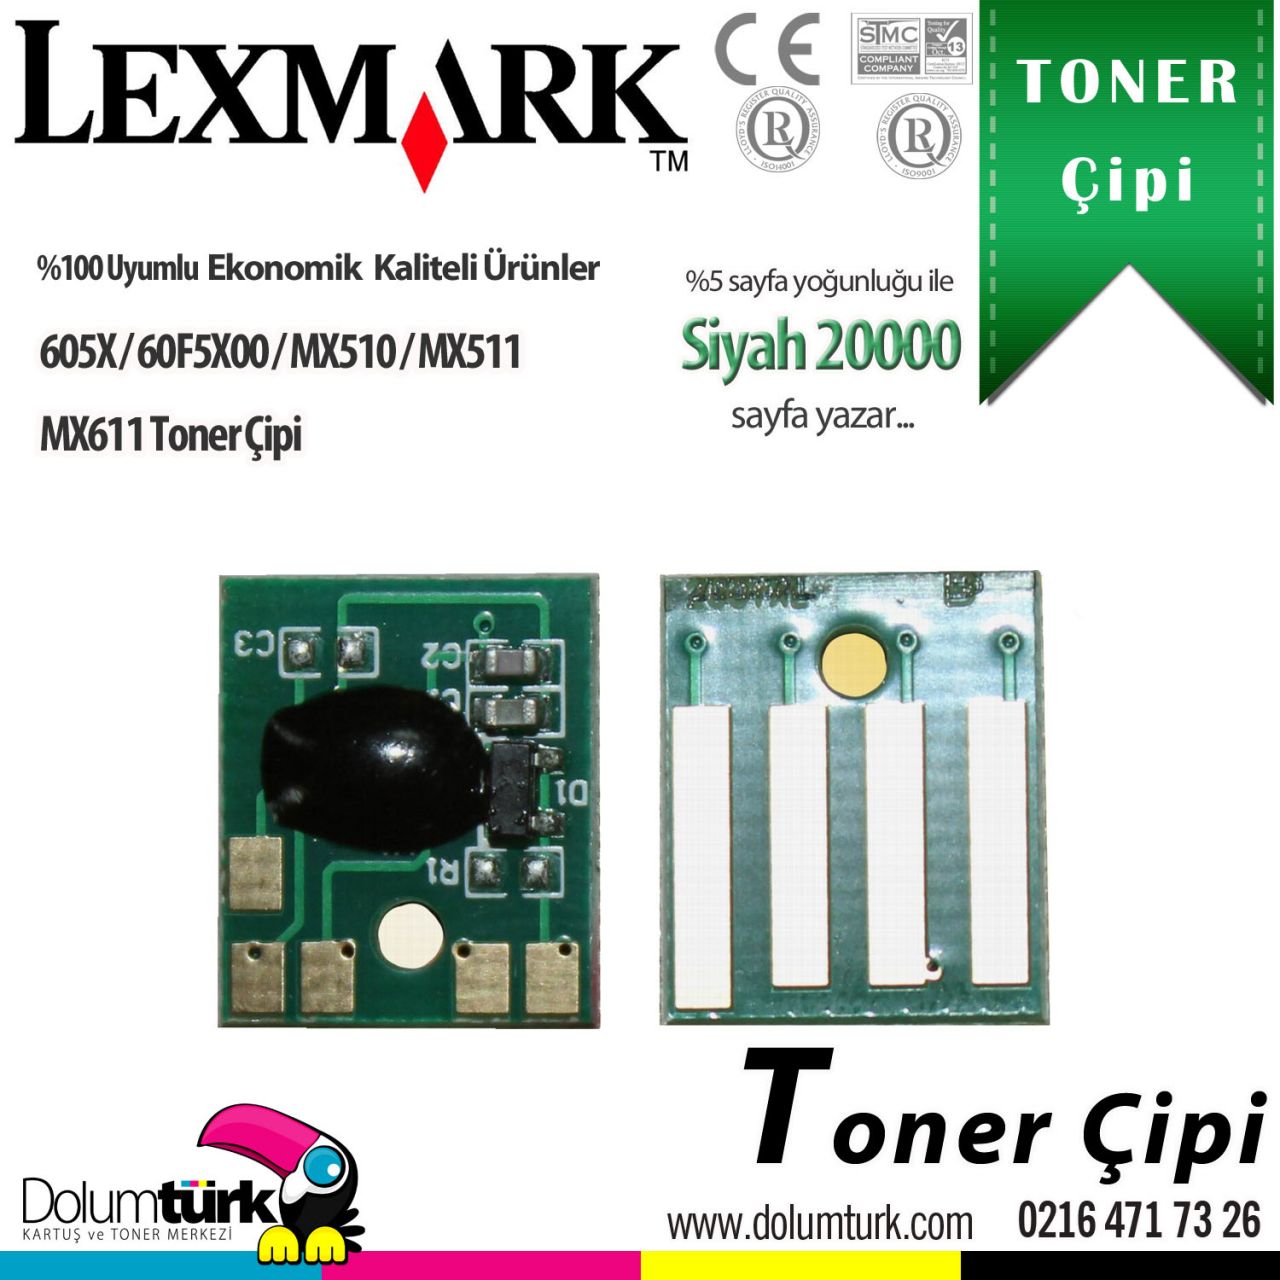 Lexmark 605X / 60F5X00 / MX510 / MX511 / MX611 Toner Çipi 20K